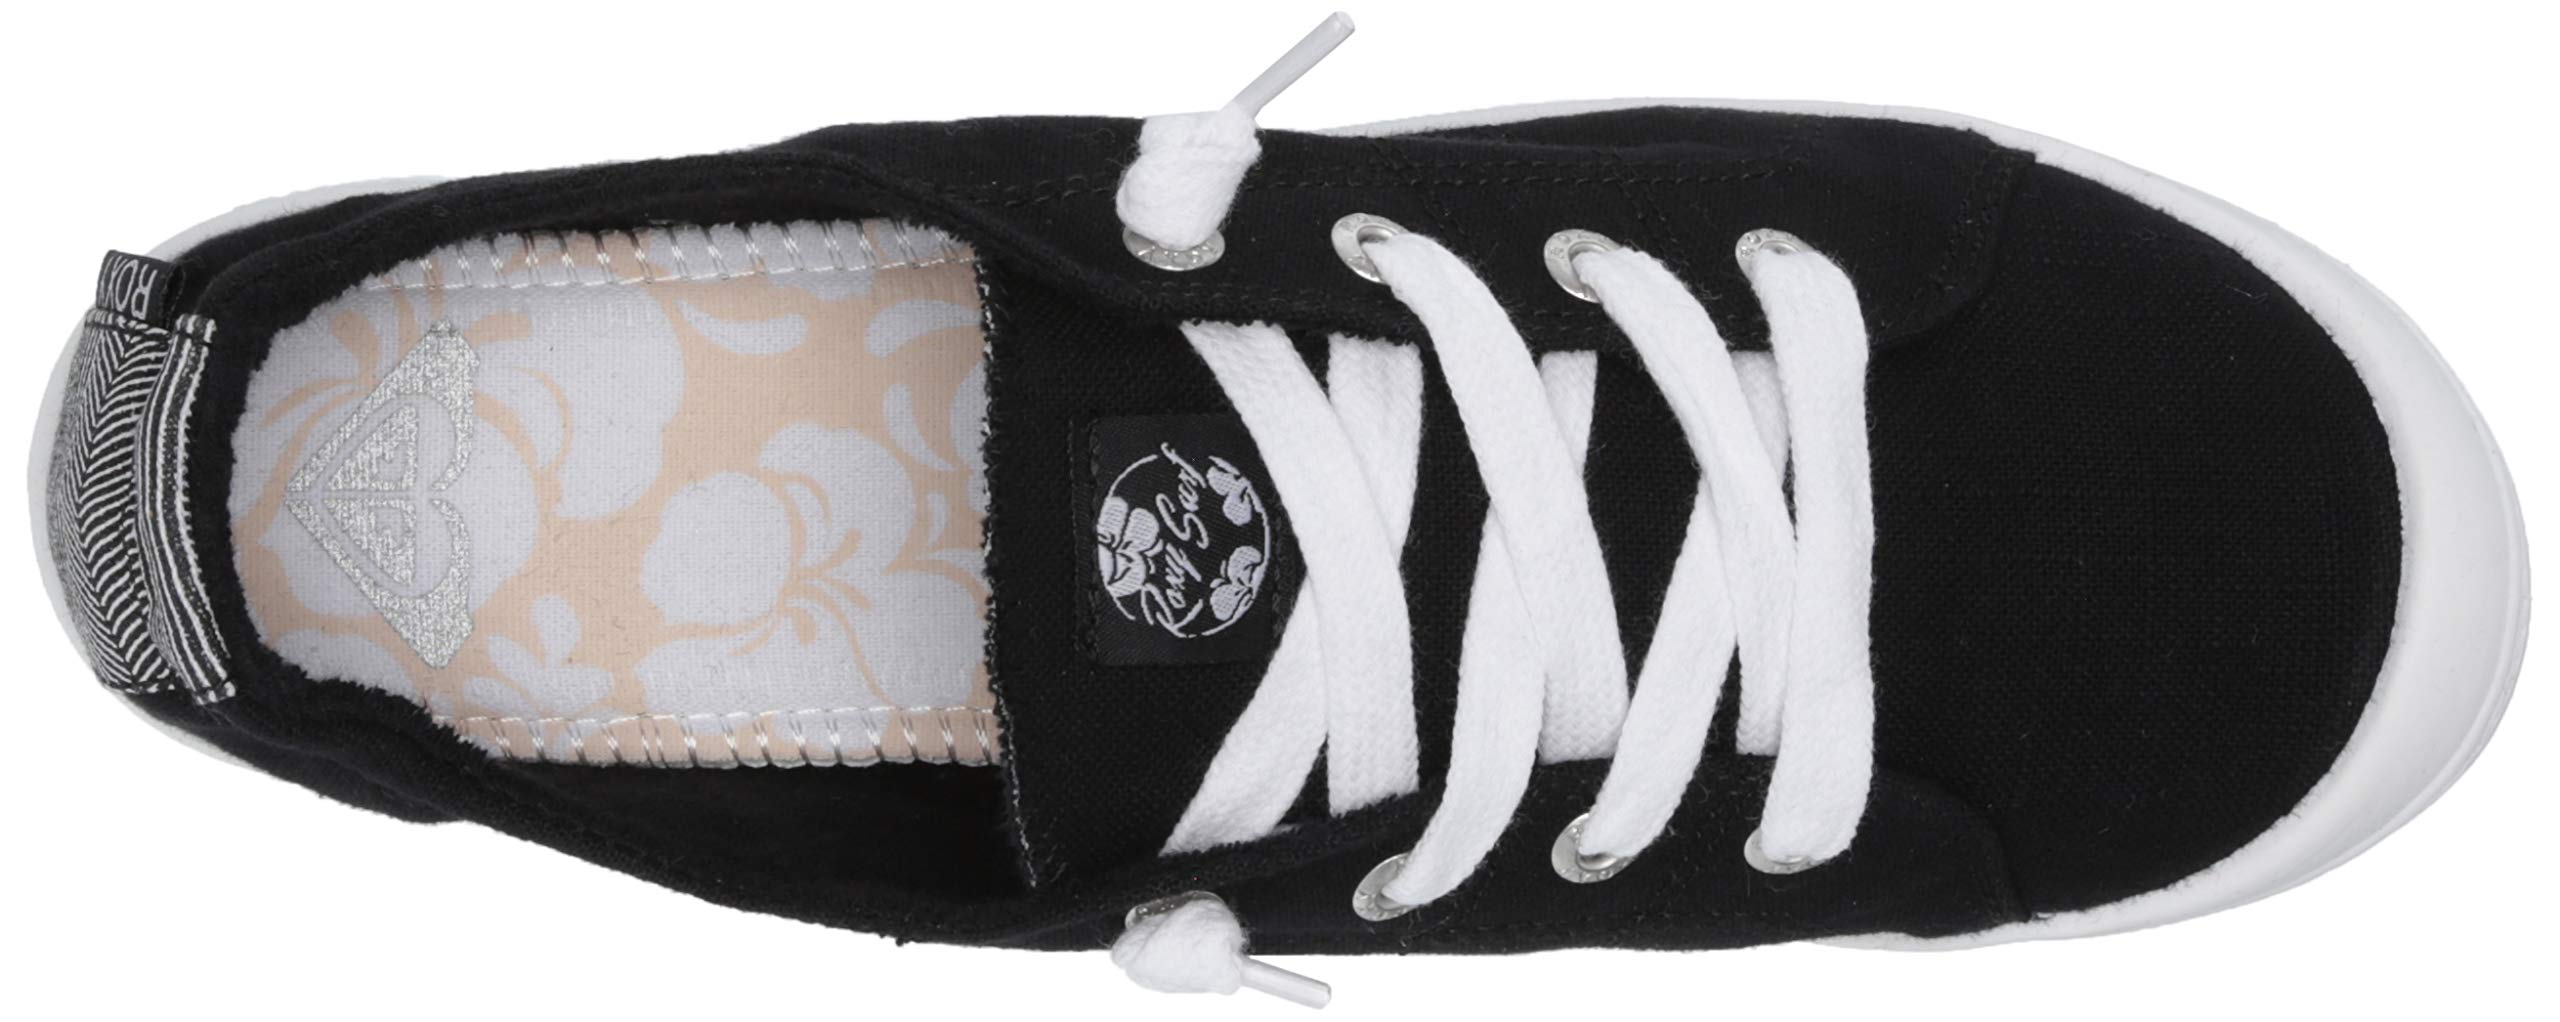 Roxy Women's Bayshore Slip on Shoe Sneaker